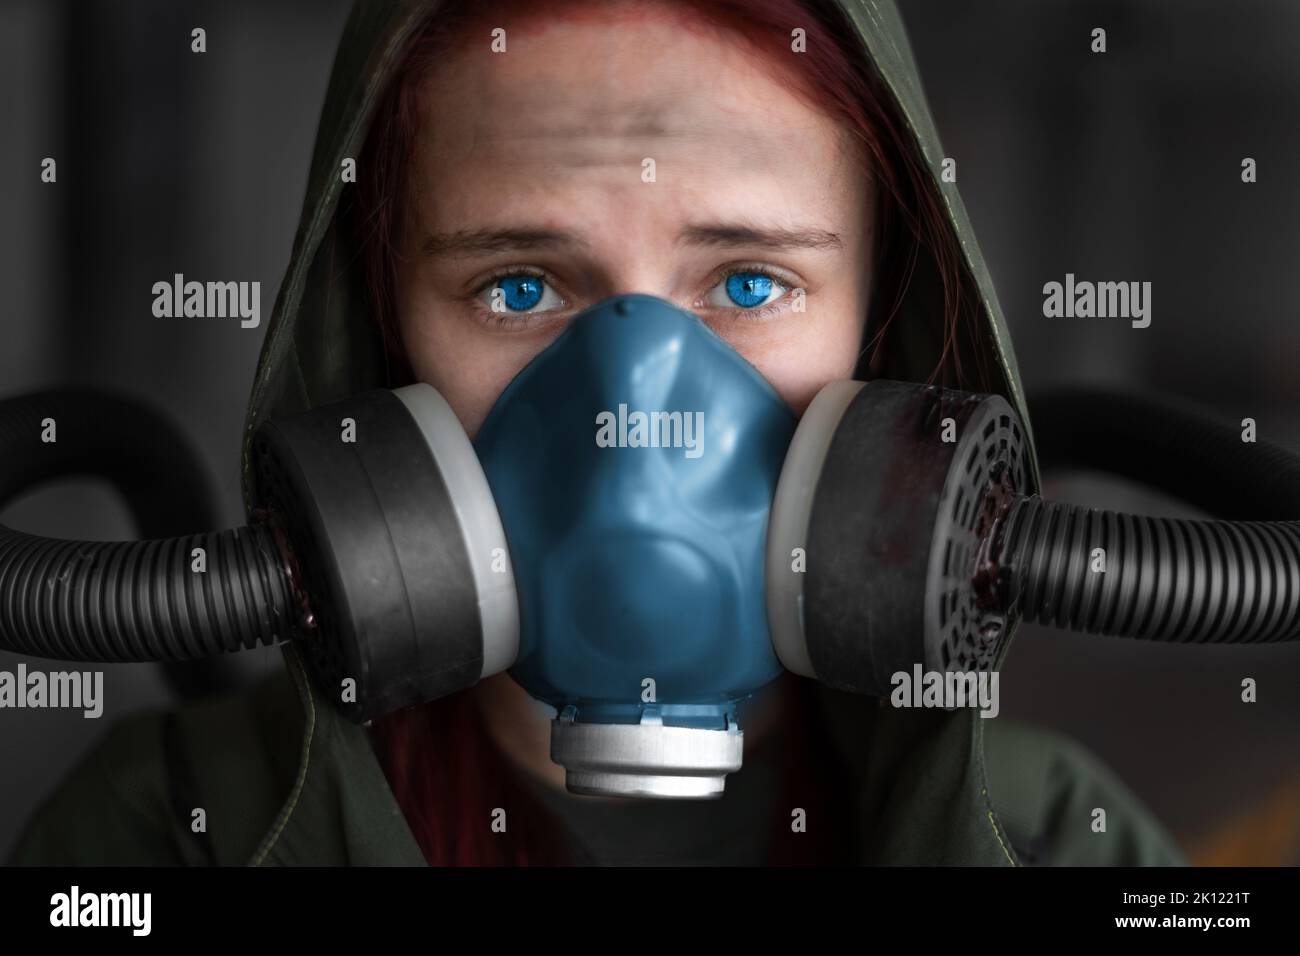 Post apocalypse femme survivante. Une jeune femme survit à une pandémie dans un masque à gaz, regardant en arrière-plan avec une zone de guerre apocalyptique arou Banque D'Images